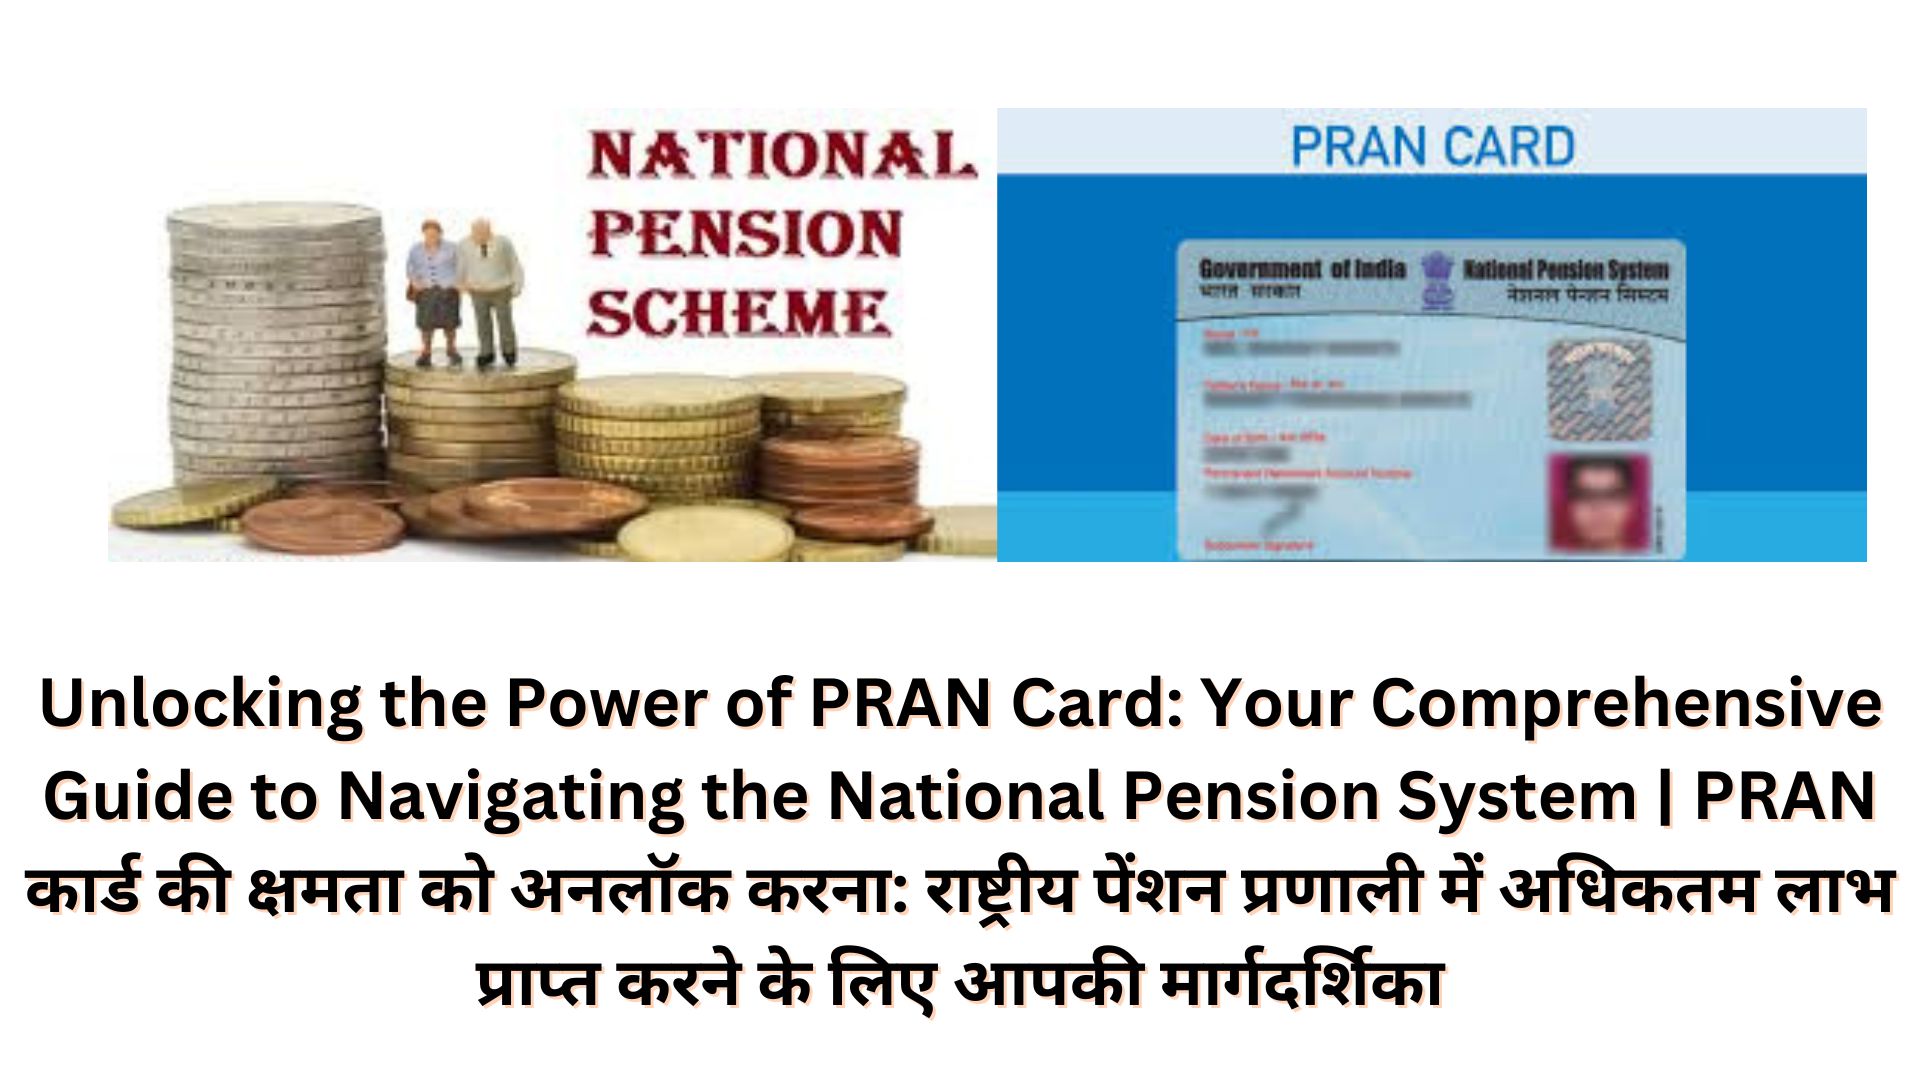 Unlocking the Power of PRAN Card: Your Comprehensive Guide to Navigating the National Pension System | PRAN कार्ड की क्षमता को अनलॉक करना: राष्ट्रीय पेंशन प्रणाली में अधिकतम लाभ प्राप्त करने के लिए आपकी मार्गदर्शिका